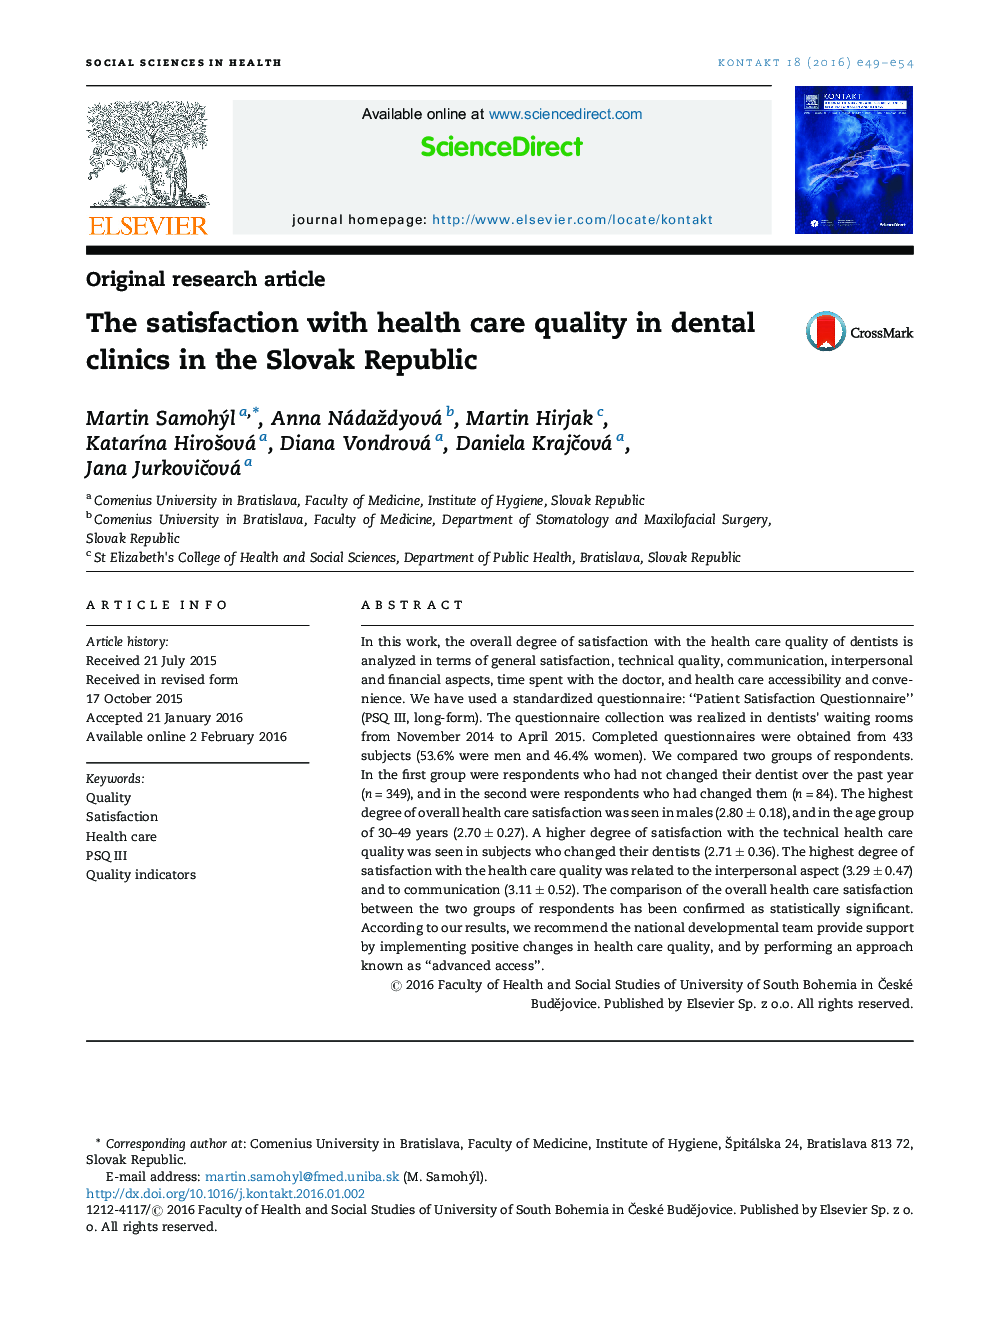 رضایت از کیفیت مراقبت های بهداشتی در کلینیک های دندانپزشکی در جمهوری اسلواکی 